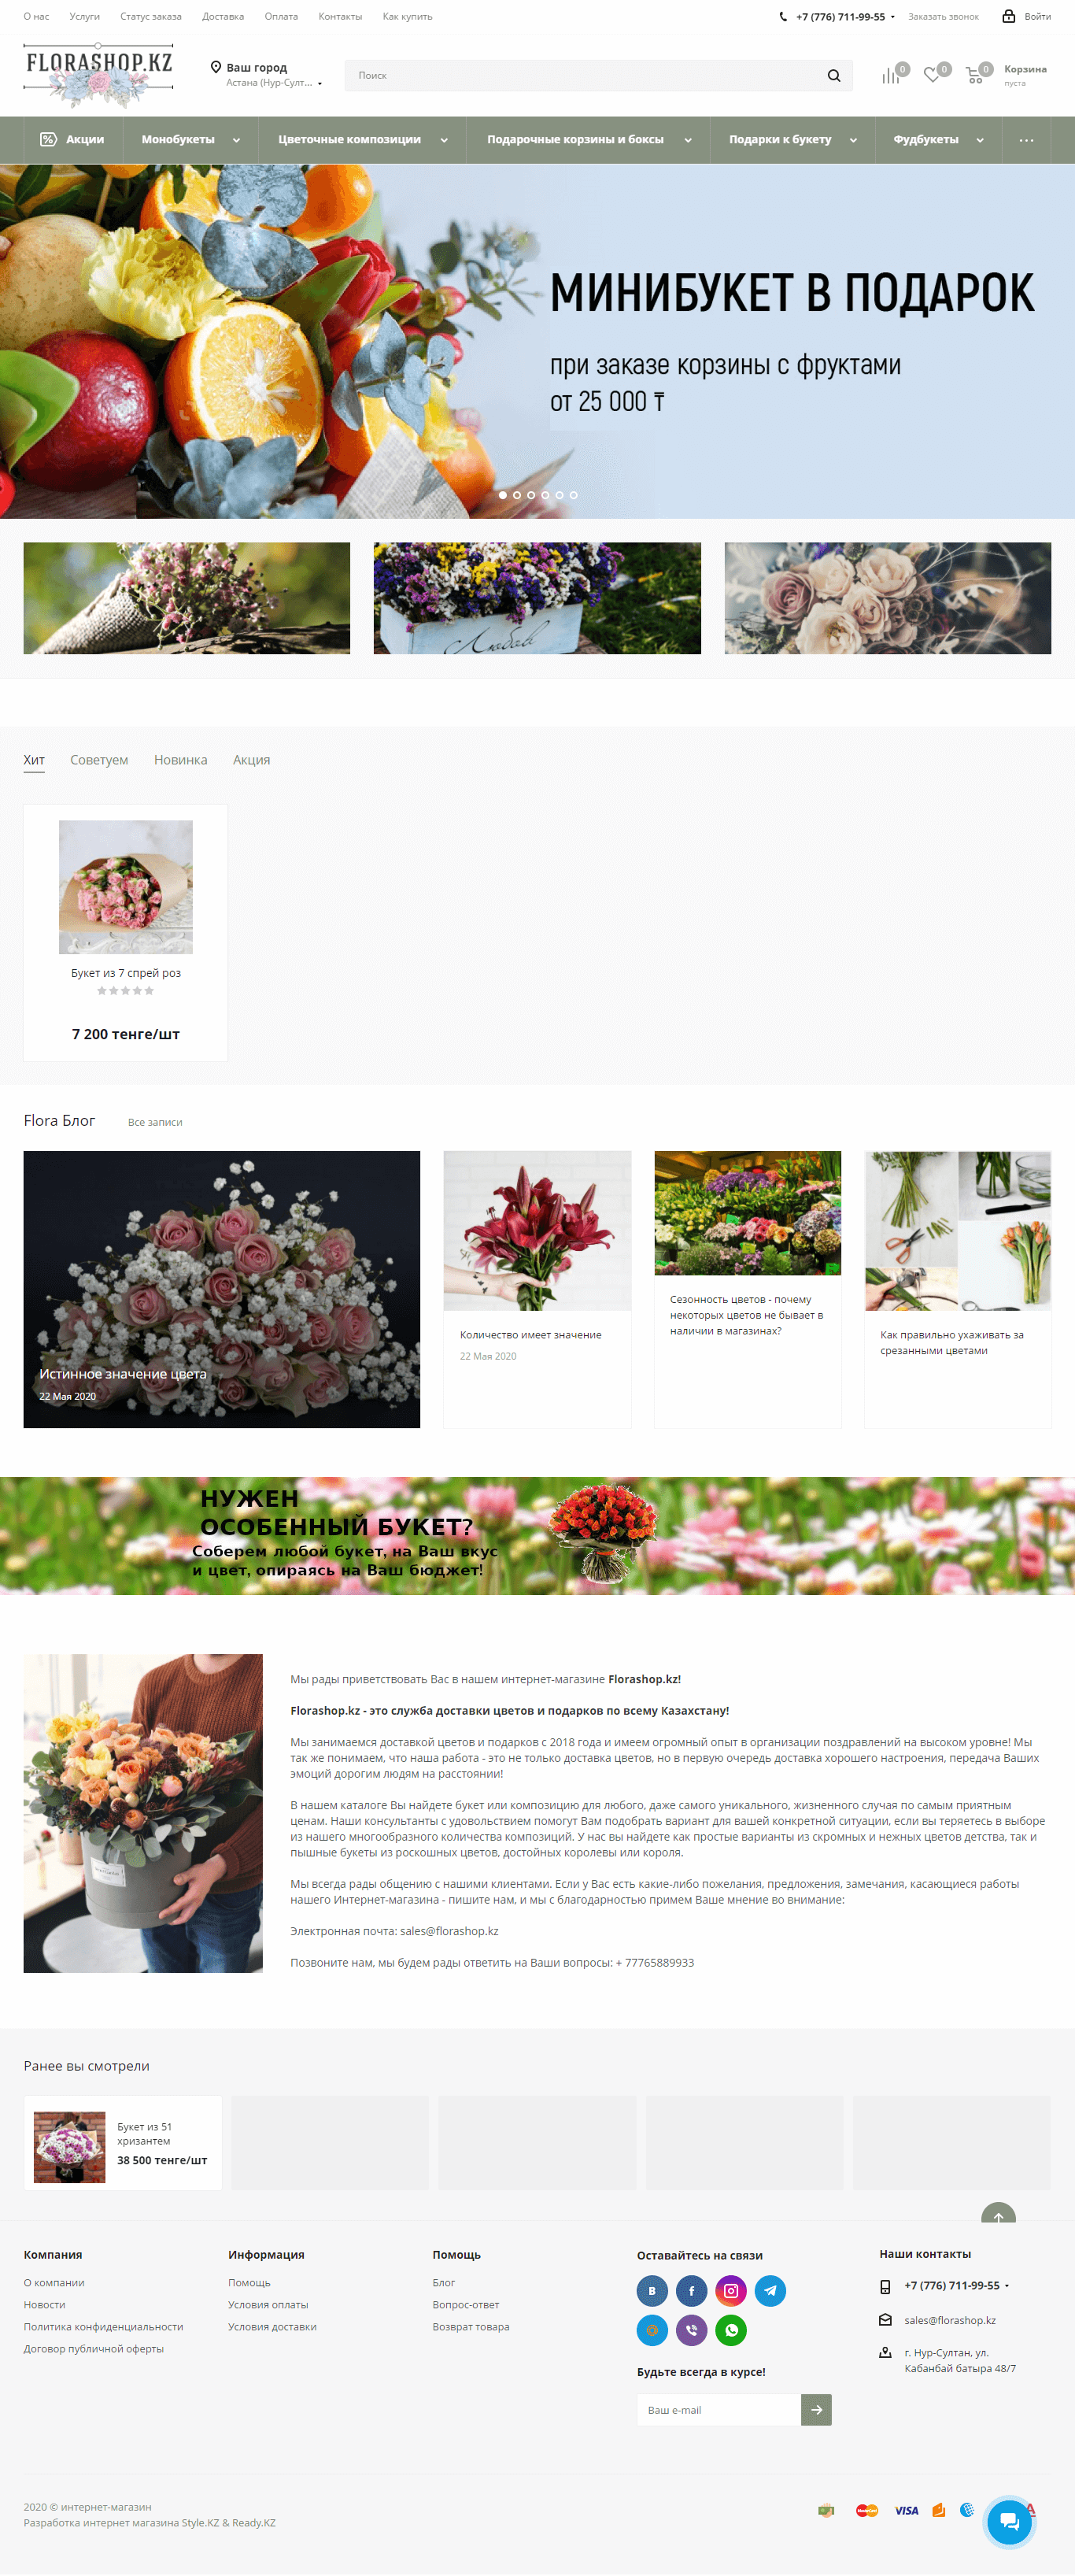 Разработка интернет-магазина цветов и подарков FloraShop.KZ